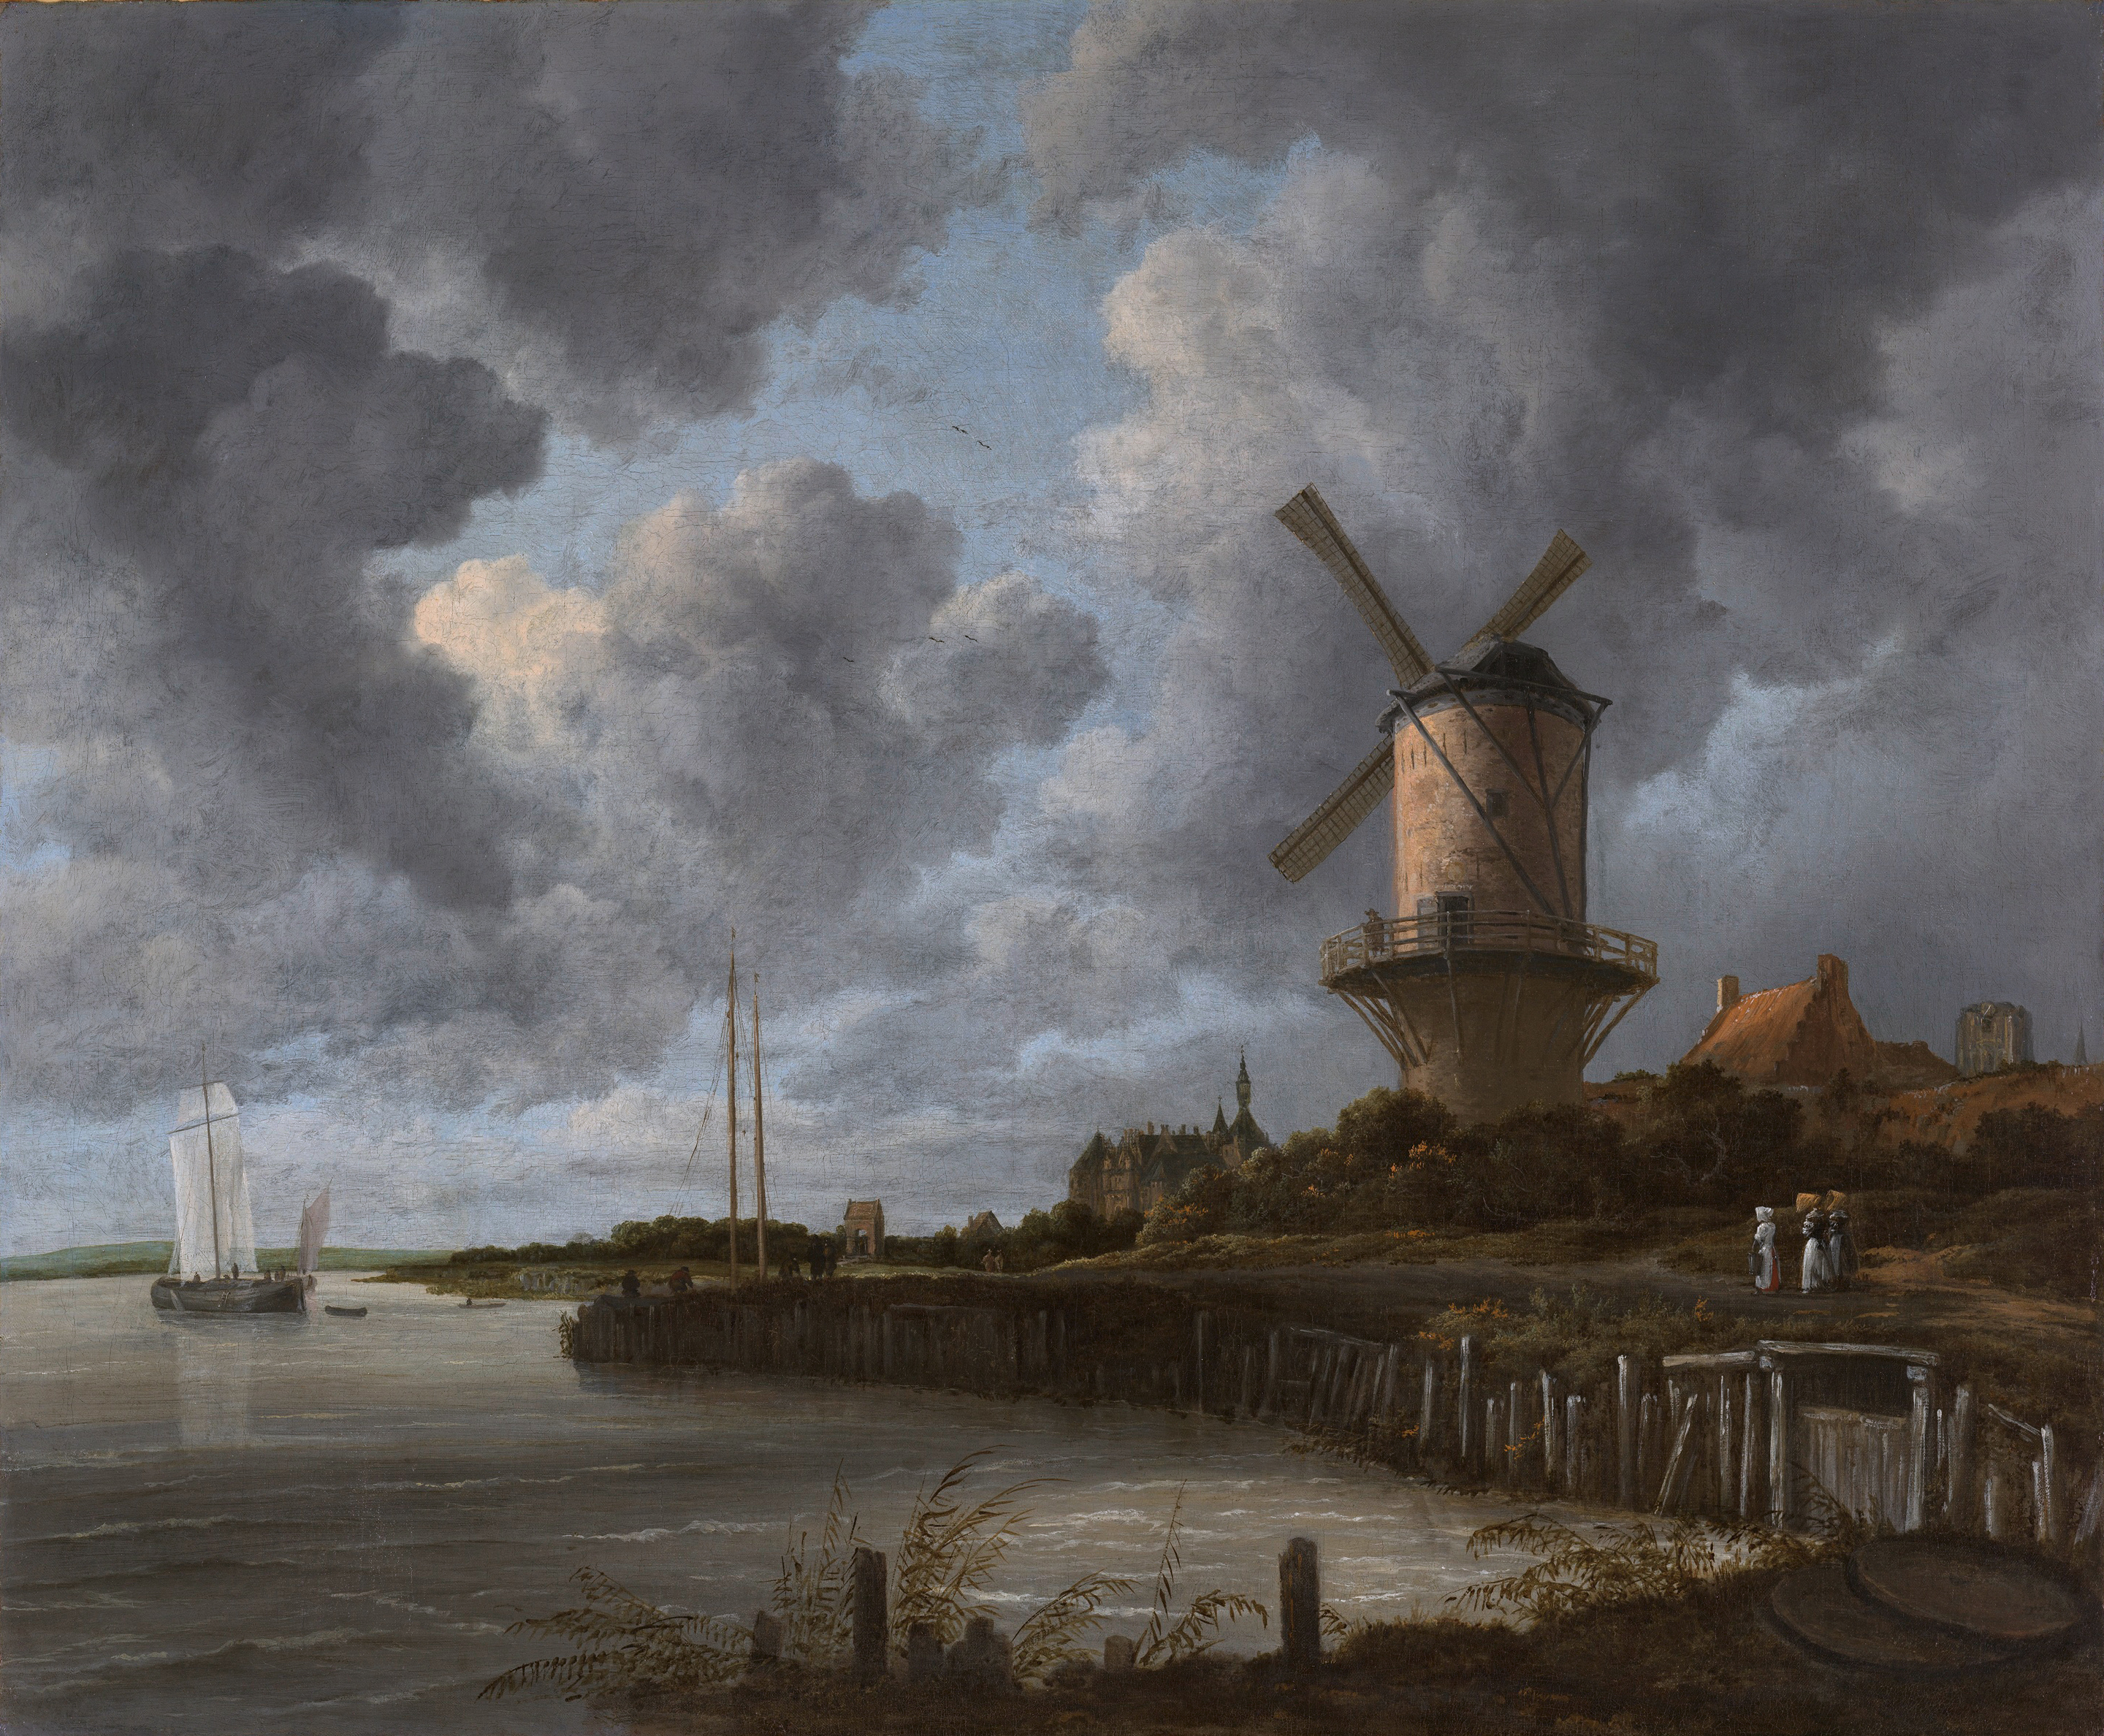 Die Windmühle in Wijk Bij Duurstede by Jacob van Ruisdael - ca. 1670 - 83 x 101 cm Rijksmuseum